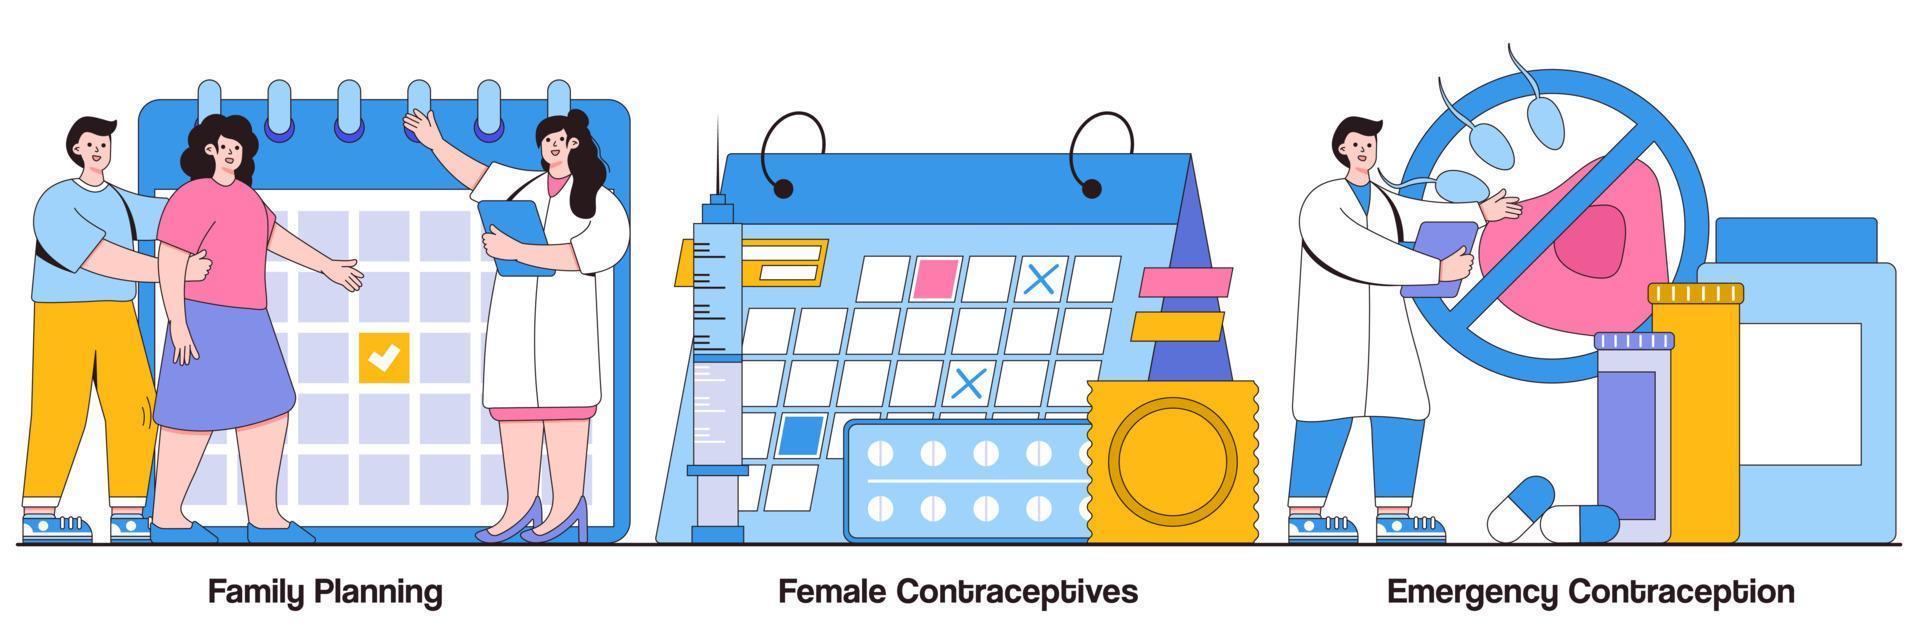 planificación familiar, anticonceptivos femeninos, anticoncepción de emergencia con paquete de ilustraciones de personajes de personas vector